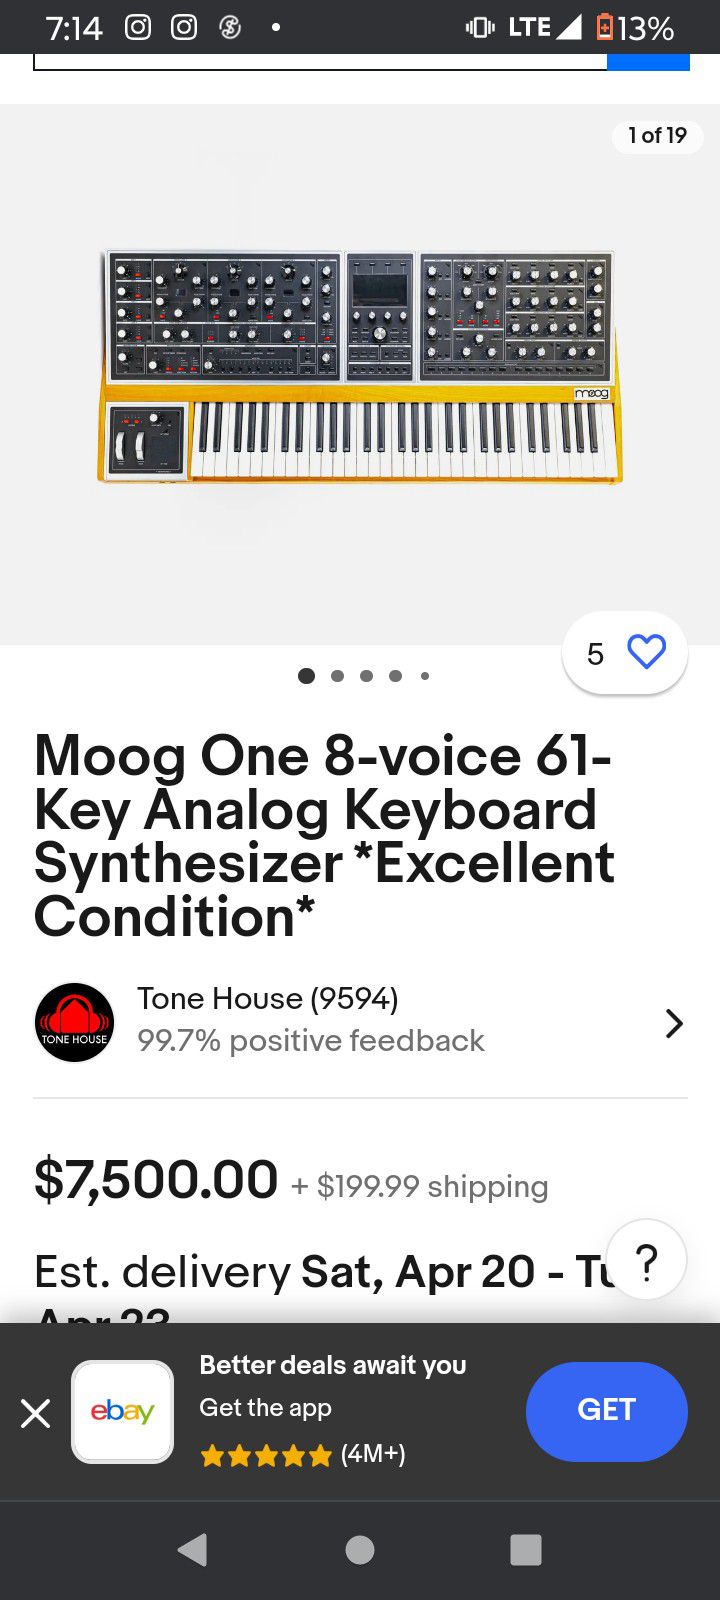 Moog One 8-Voice Polyphonic Analog Synthesizer
